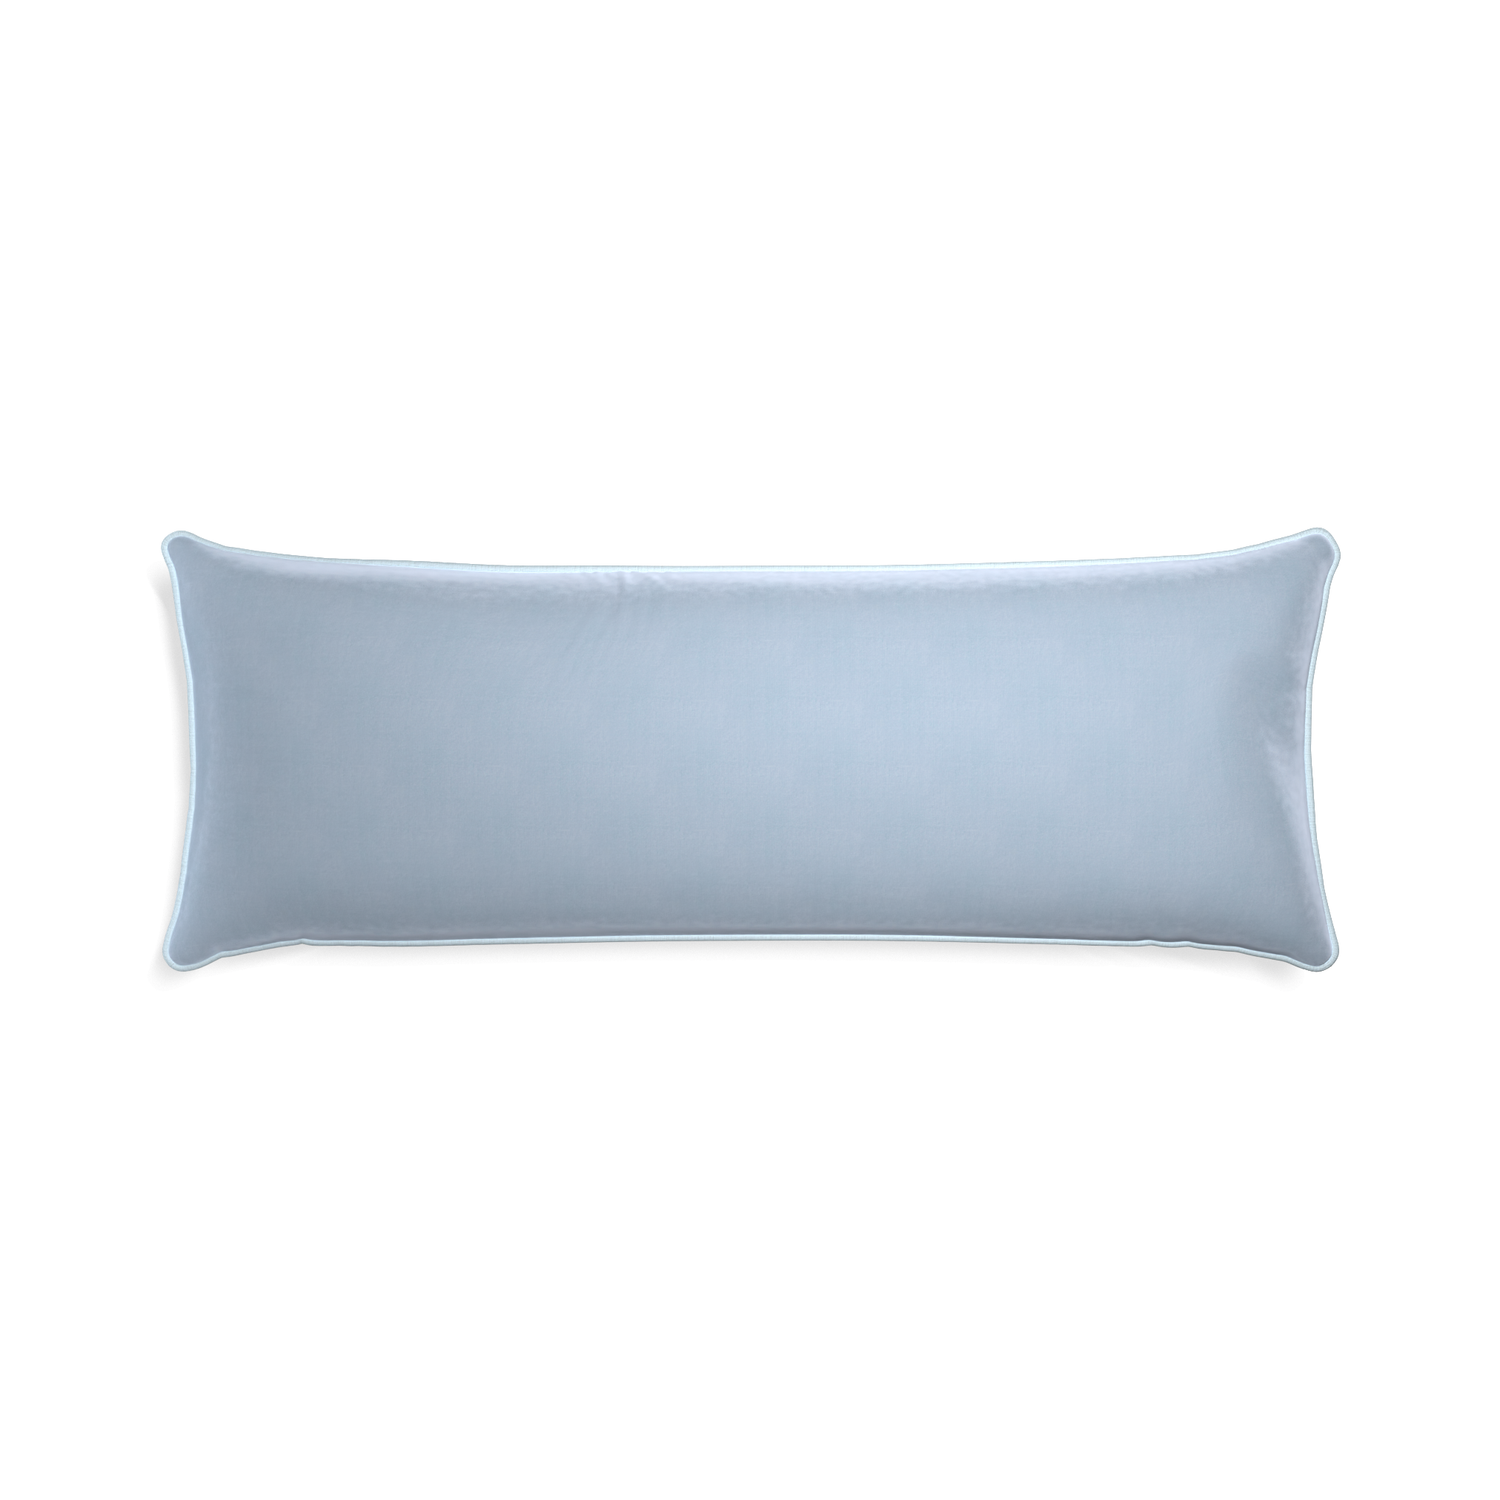 rectangle light blue velvet pillow with light blue piping